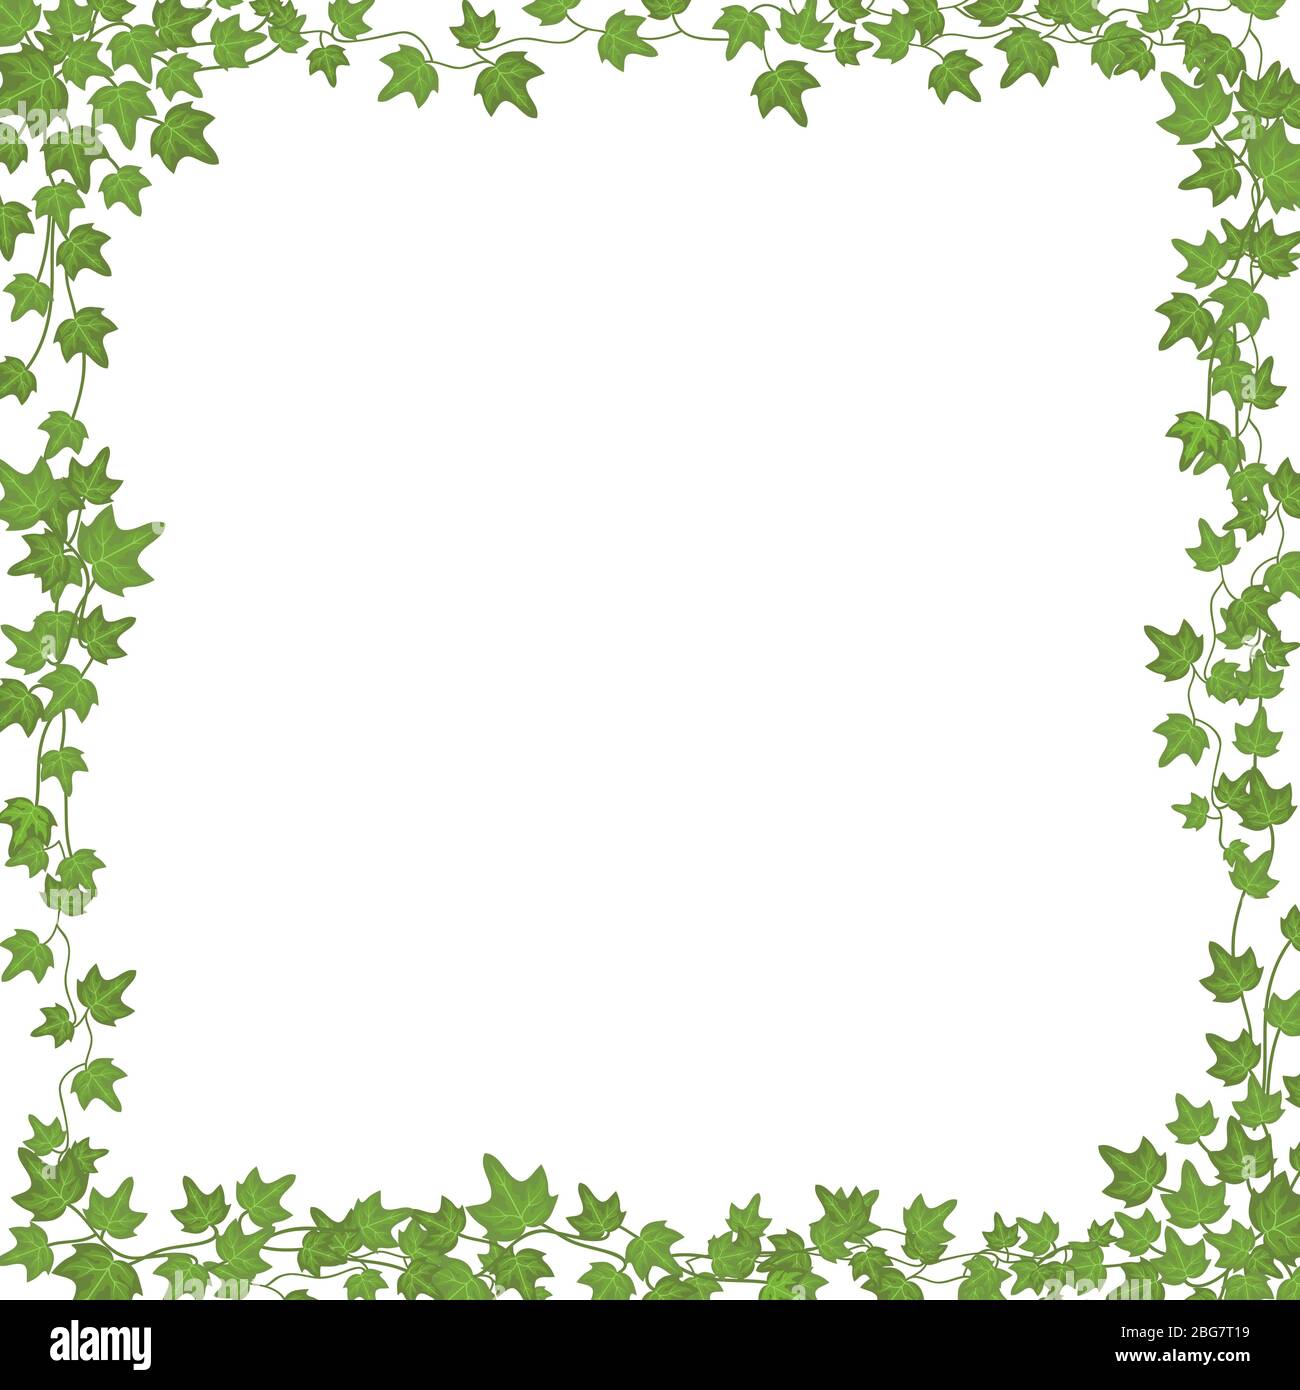 Vignes Ivy avec feuilles vertes. Cadre rectangulaire vectoriel floral isolé sur fond blanc. Illustration plante verte, branche de vigne tordeuse, rectangulaire ivy Illustration de Vecteur